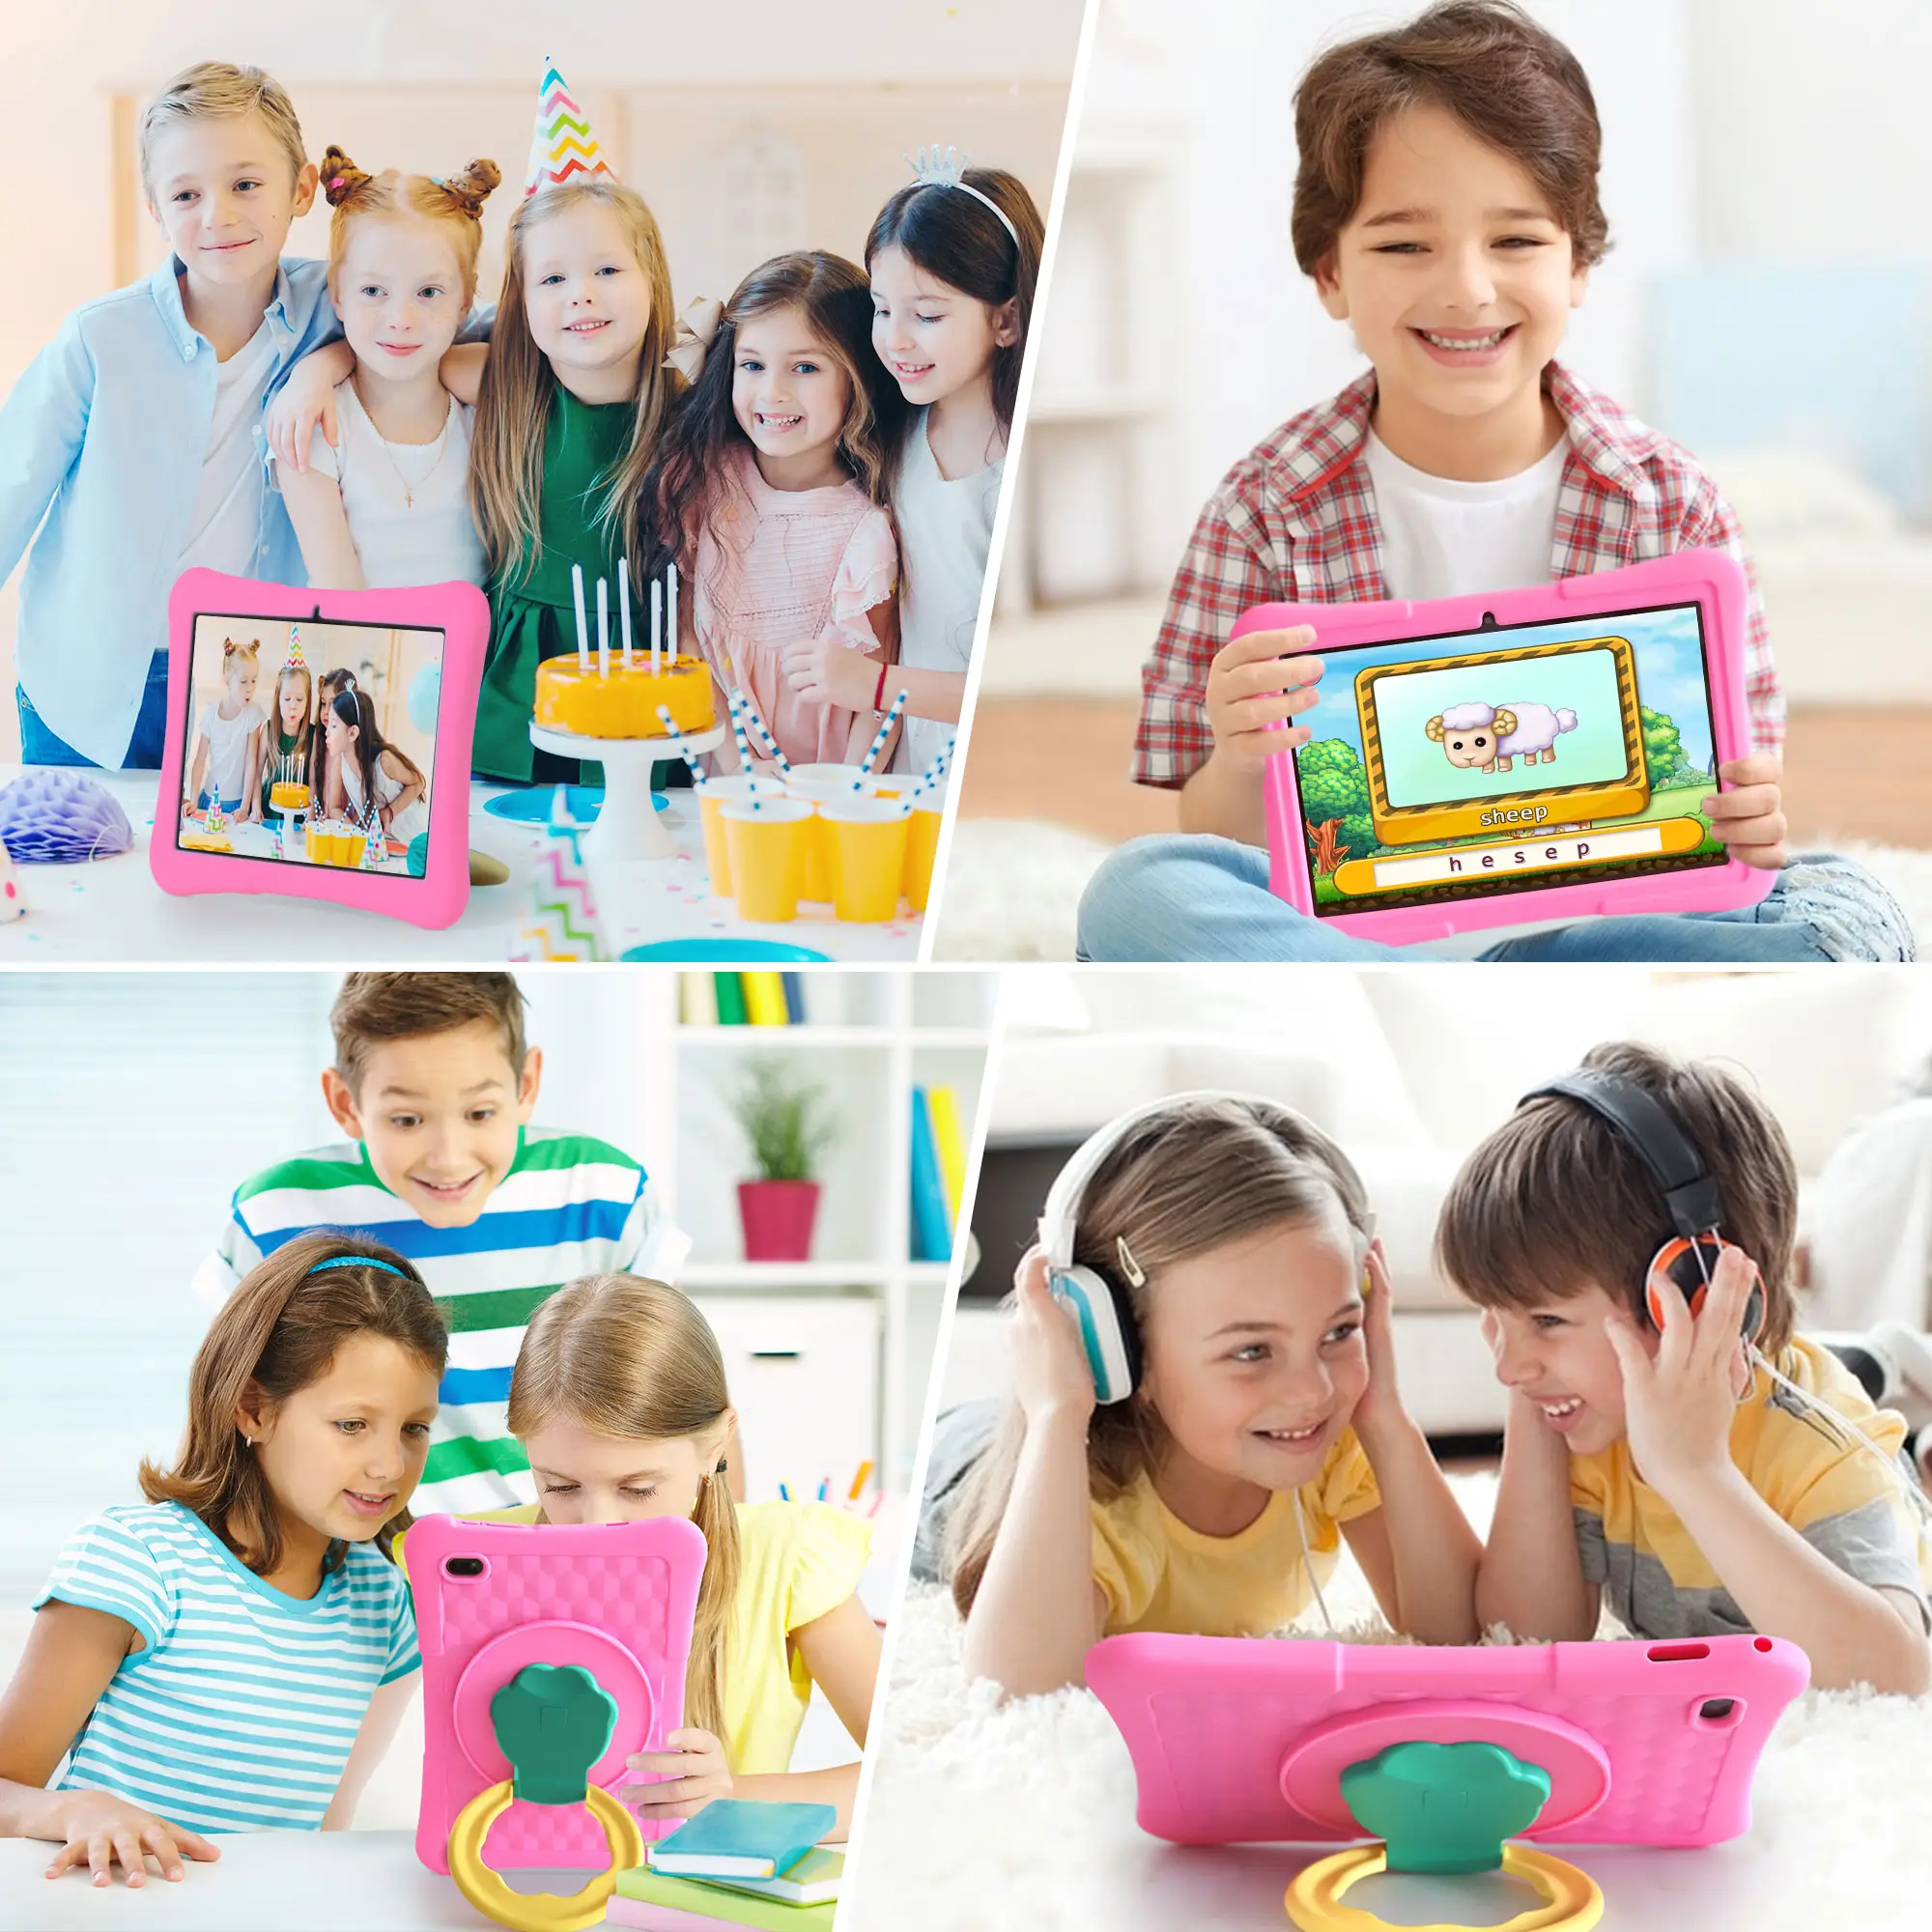 Veidoo trẻ em Máy tính bảng PC 10 inch máy tính bảng Android cho trẻ em 8GB 4 mở rộng RAM 128GB Rom Wifi 6 máy tính bảng với trường hợp chống sốc